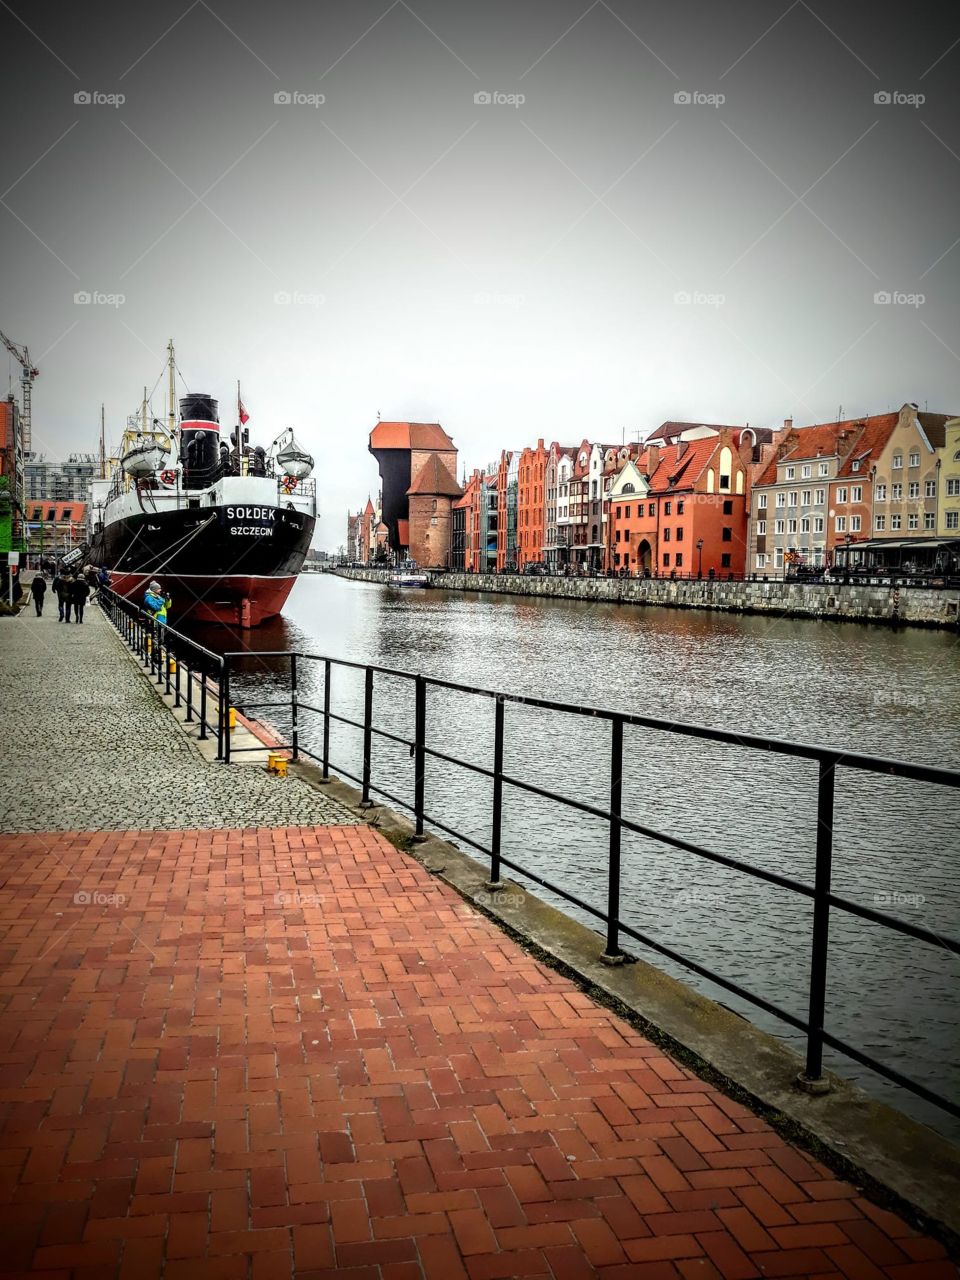 Gdansk city 